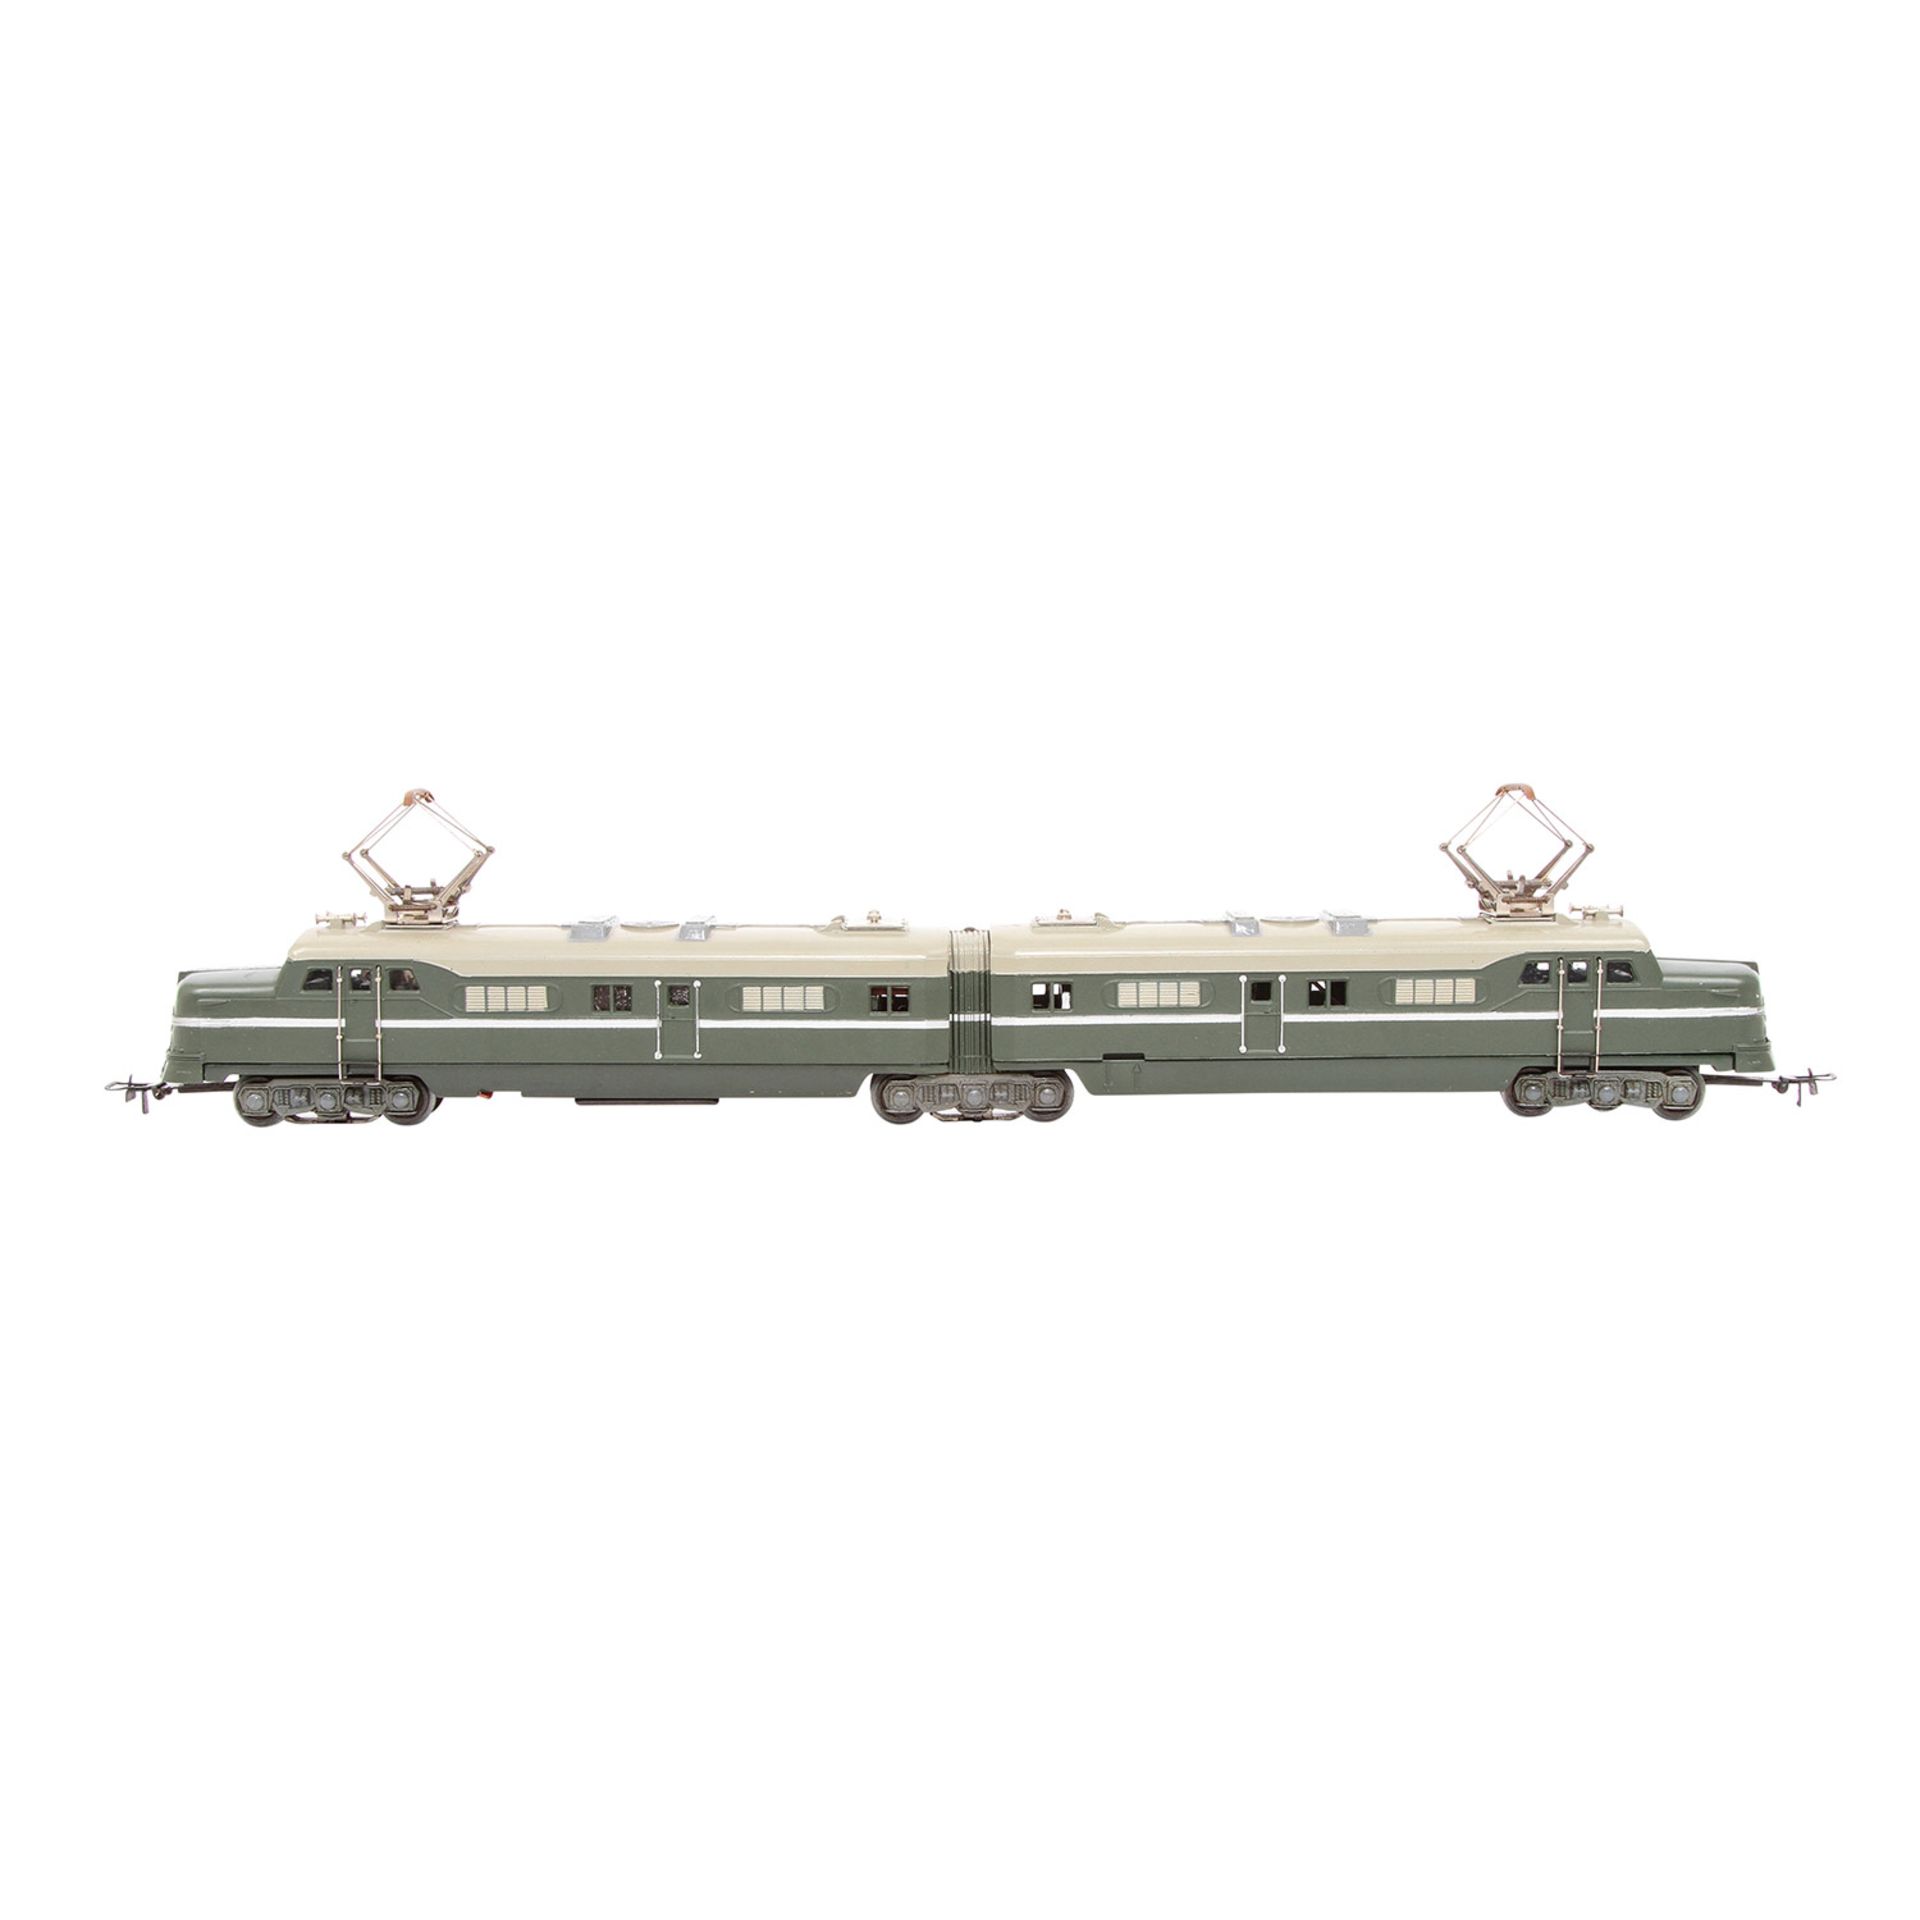 MÄRKLIN Doppellokomotive DL 800, Spur H0, 1952-1954, Guss, olivgrün, graues Dach, beidseitig 3 - Image 5 of 9